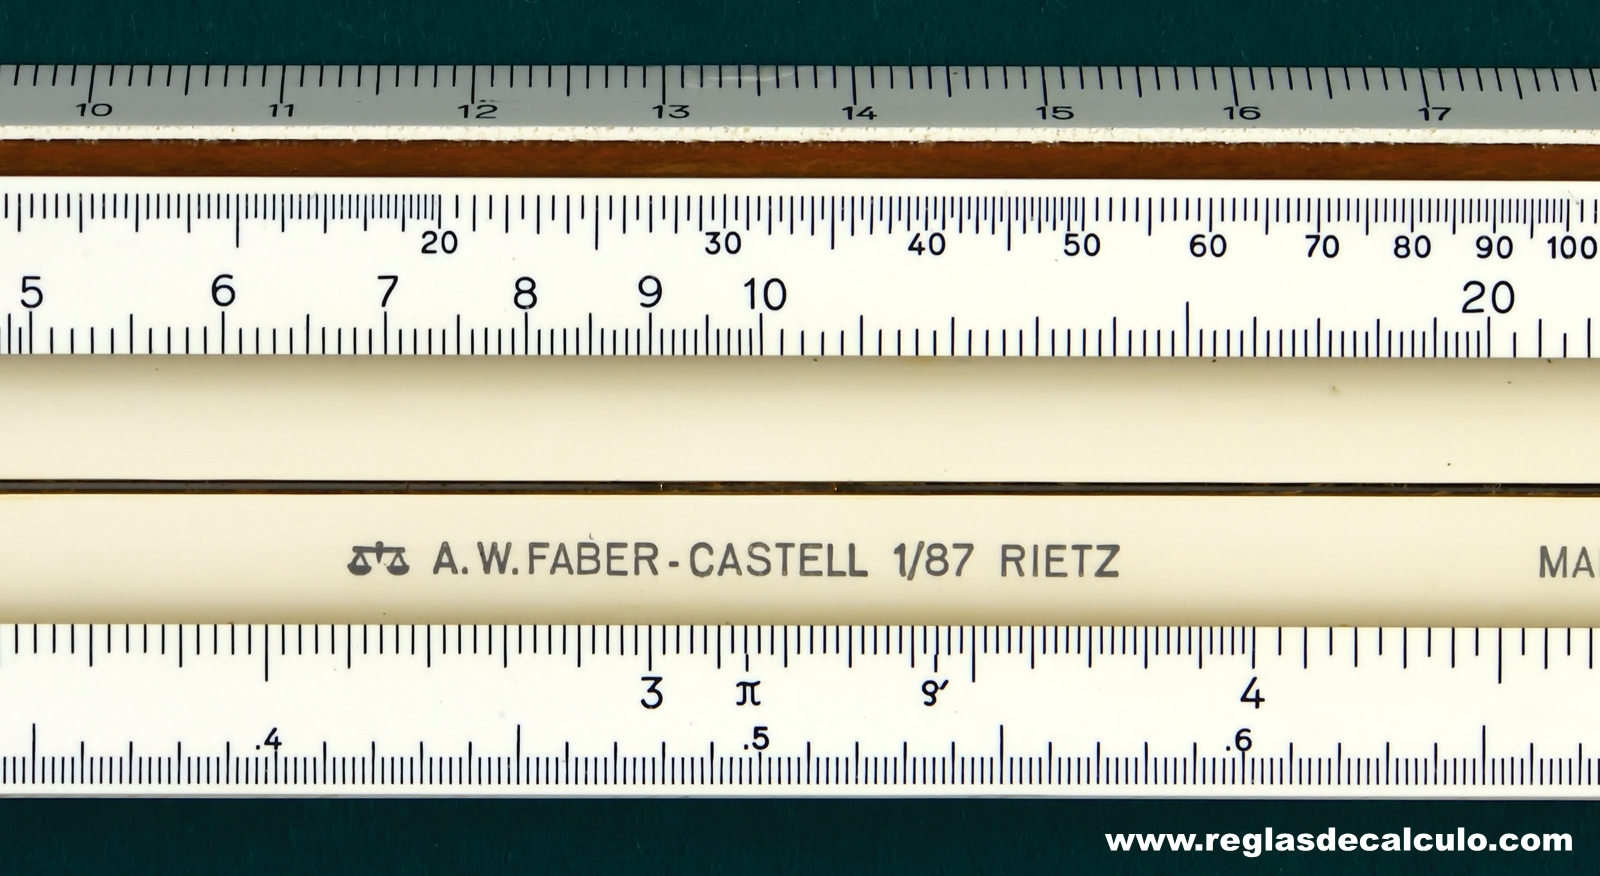 Faber Castell 1/87 Rietz